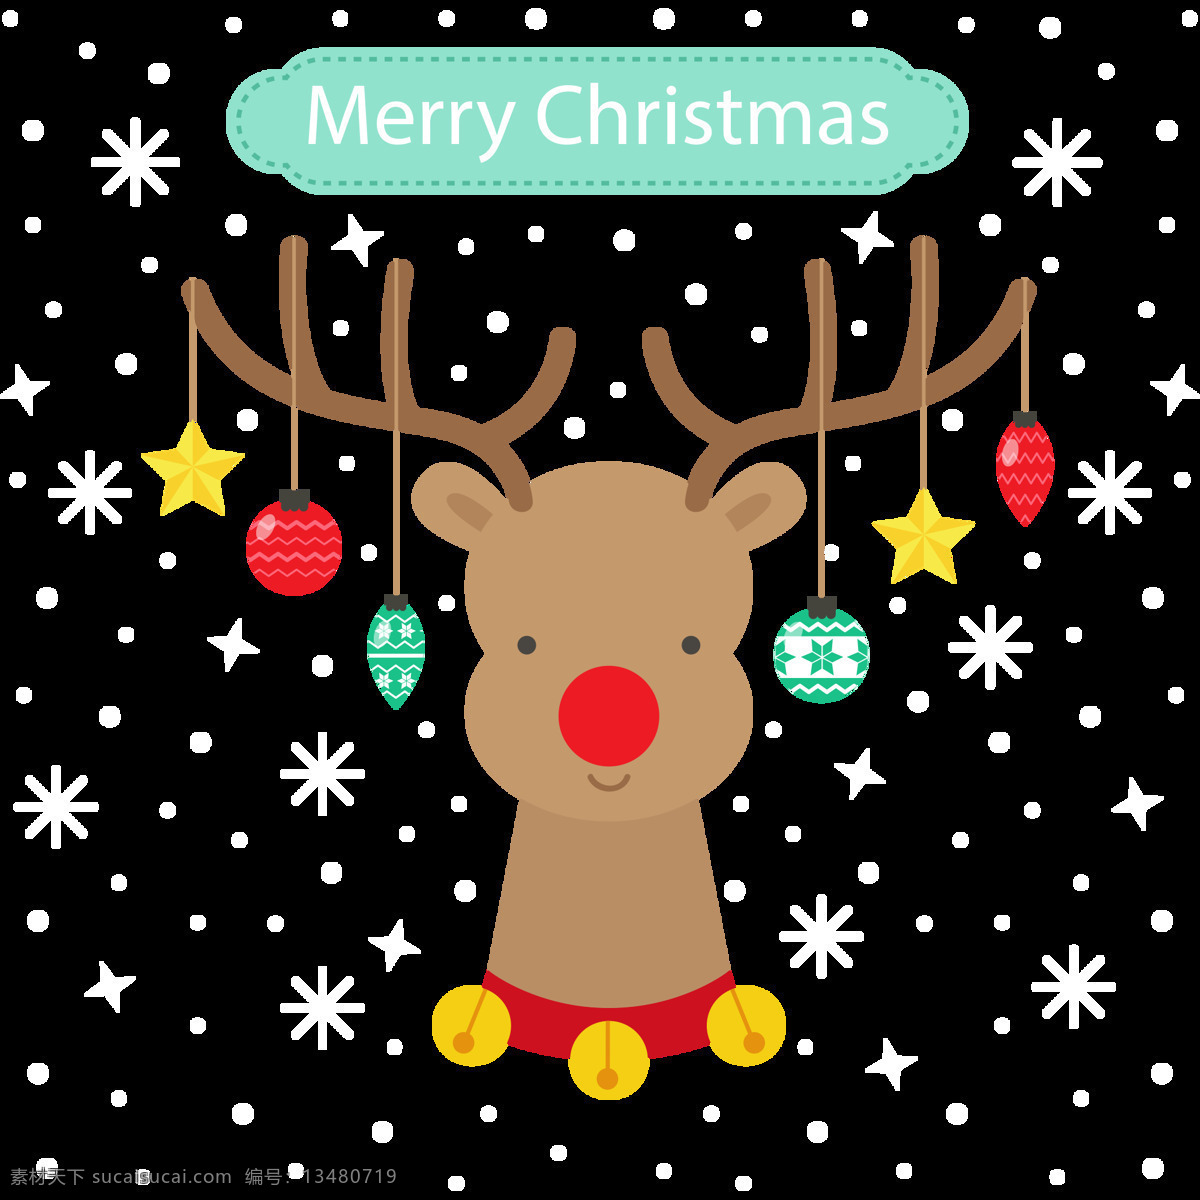 卡通 圣诞 彩灯 麋鹿 头像 元素 christmas merry 卡通麋鹿 麋鹿头像 麋鹿元素 设计素材 圣诞节 圣诞节装饰 圣诞麋鹿 圣诞素材 圣诞元素下载